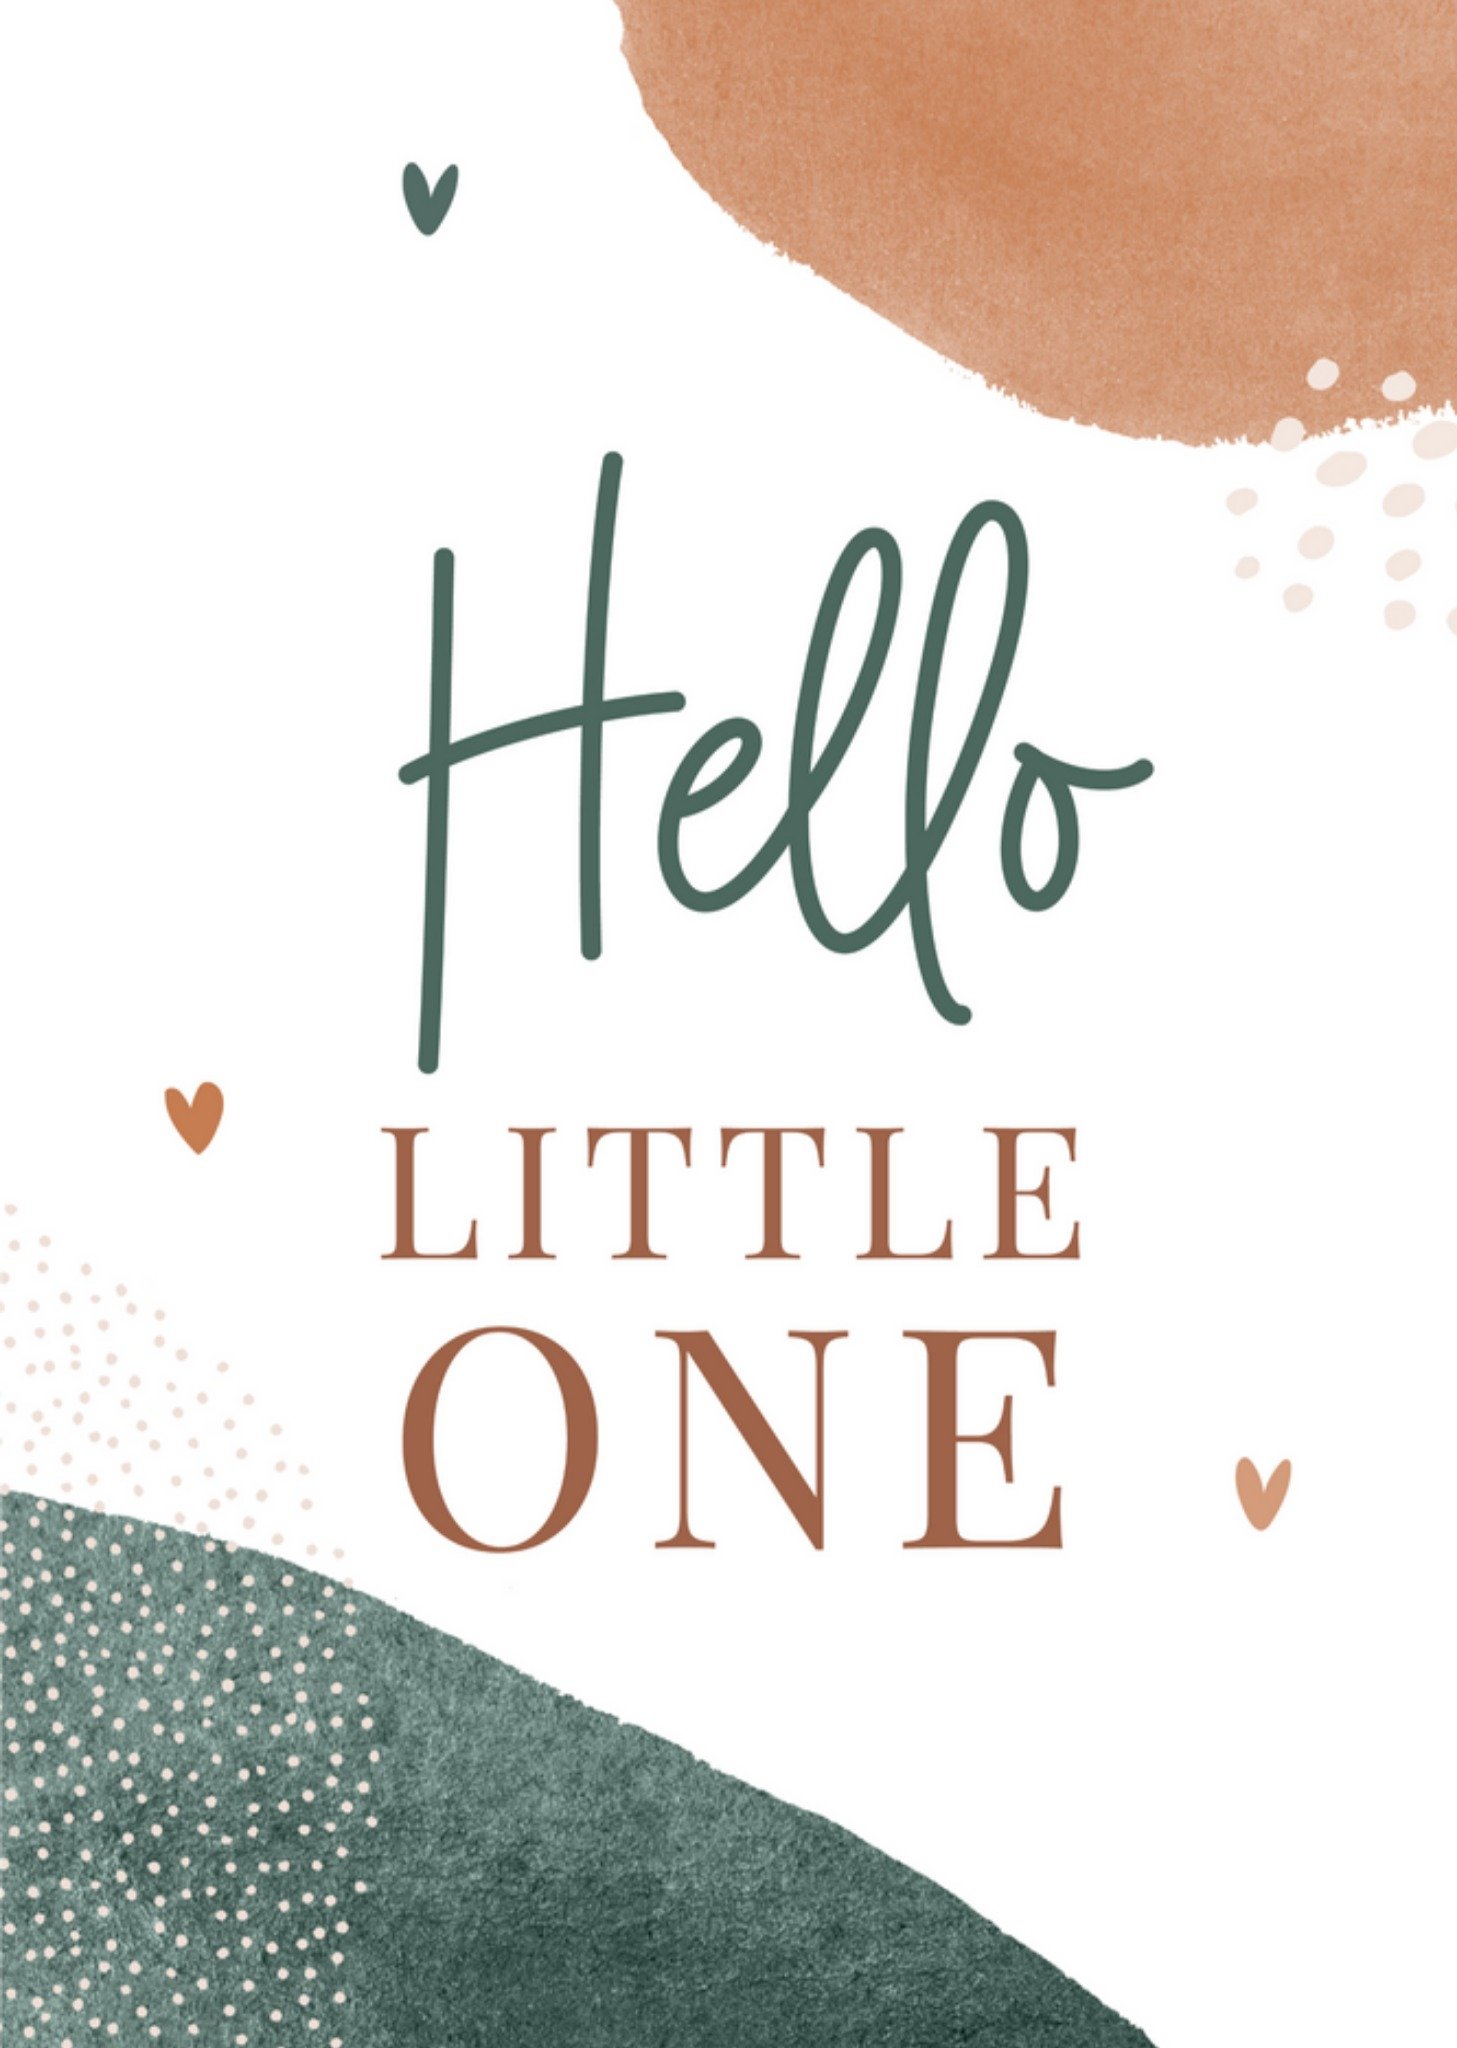 Papercute - Geboortekaart - Hello Little One